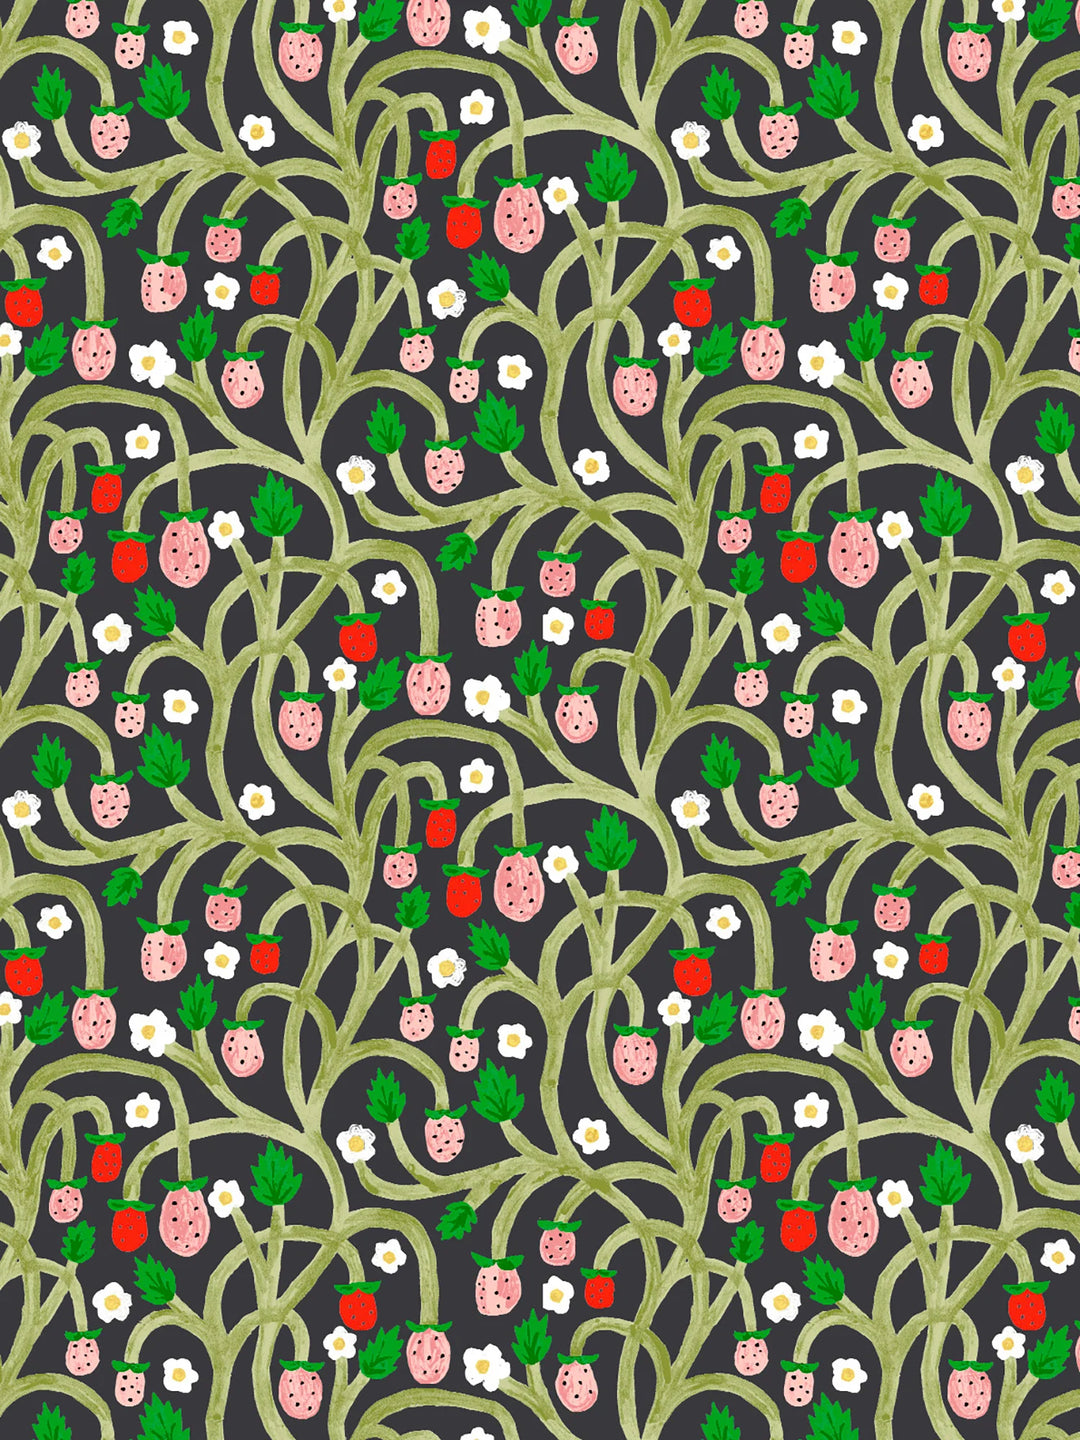 wild-strawberries-wallpaper-midnight-vine